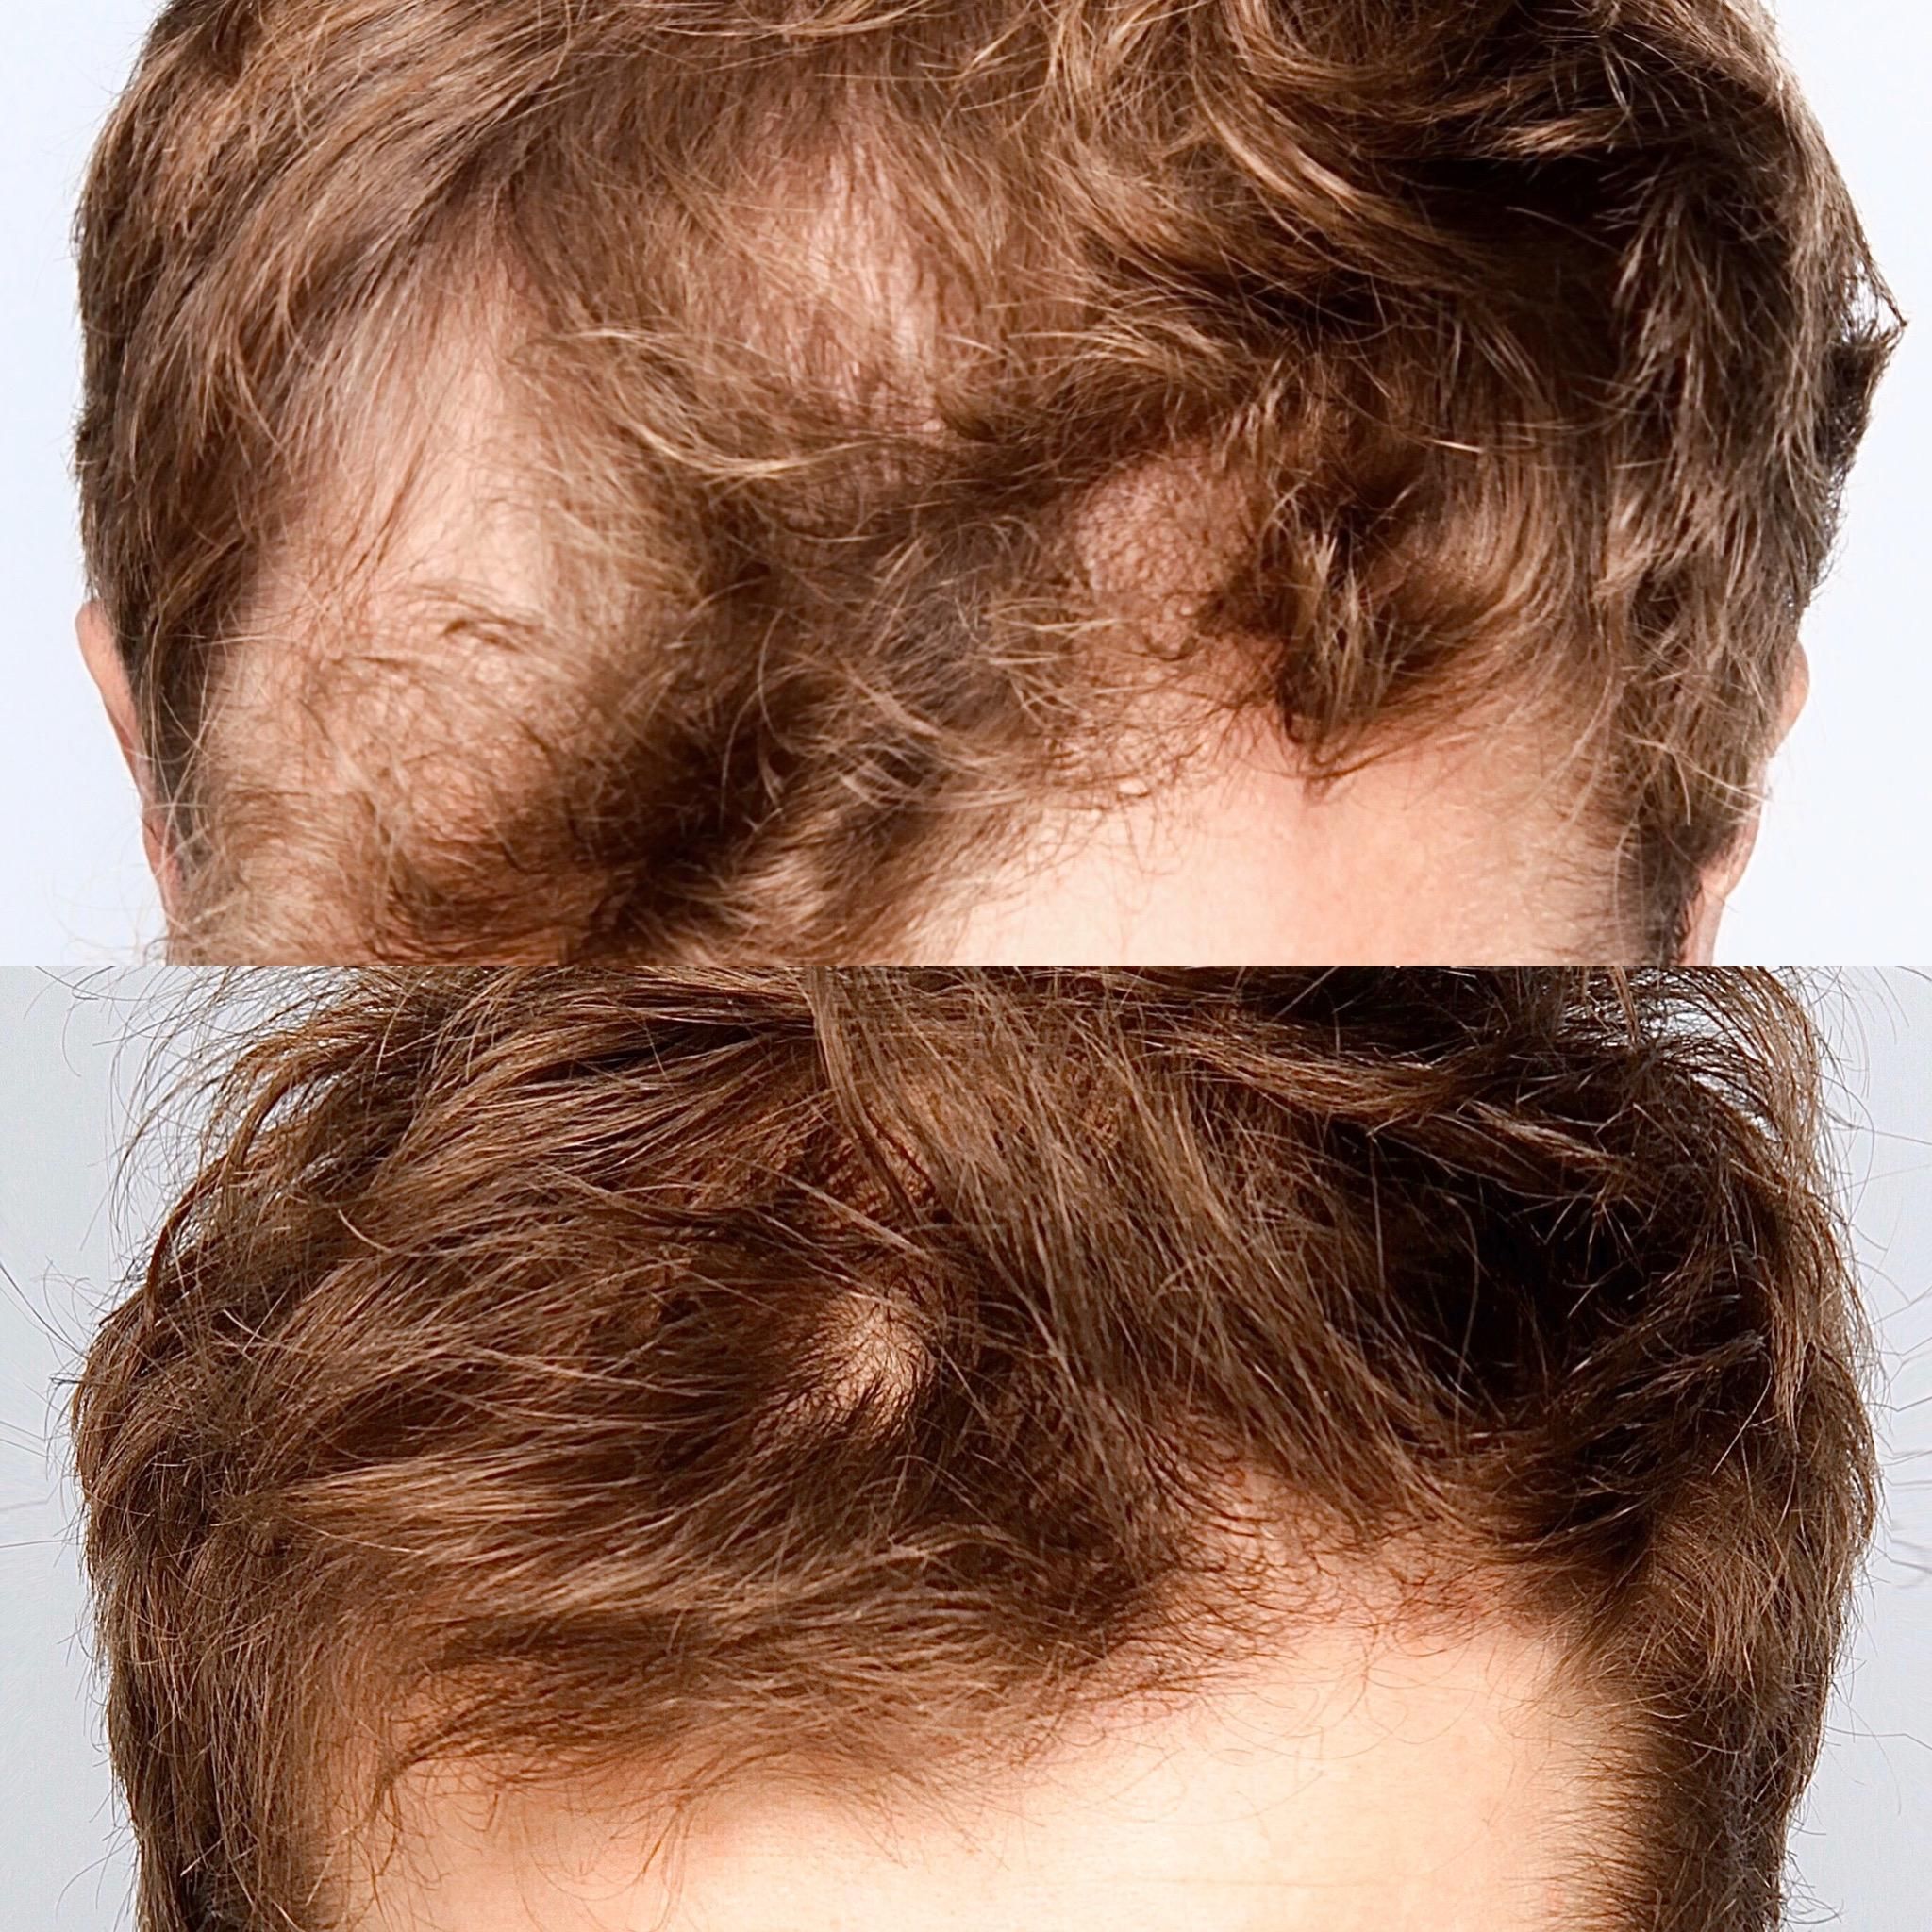 Przeszczep włosów: przed i po